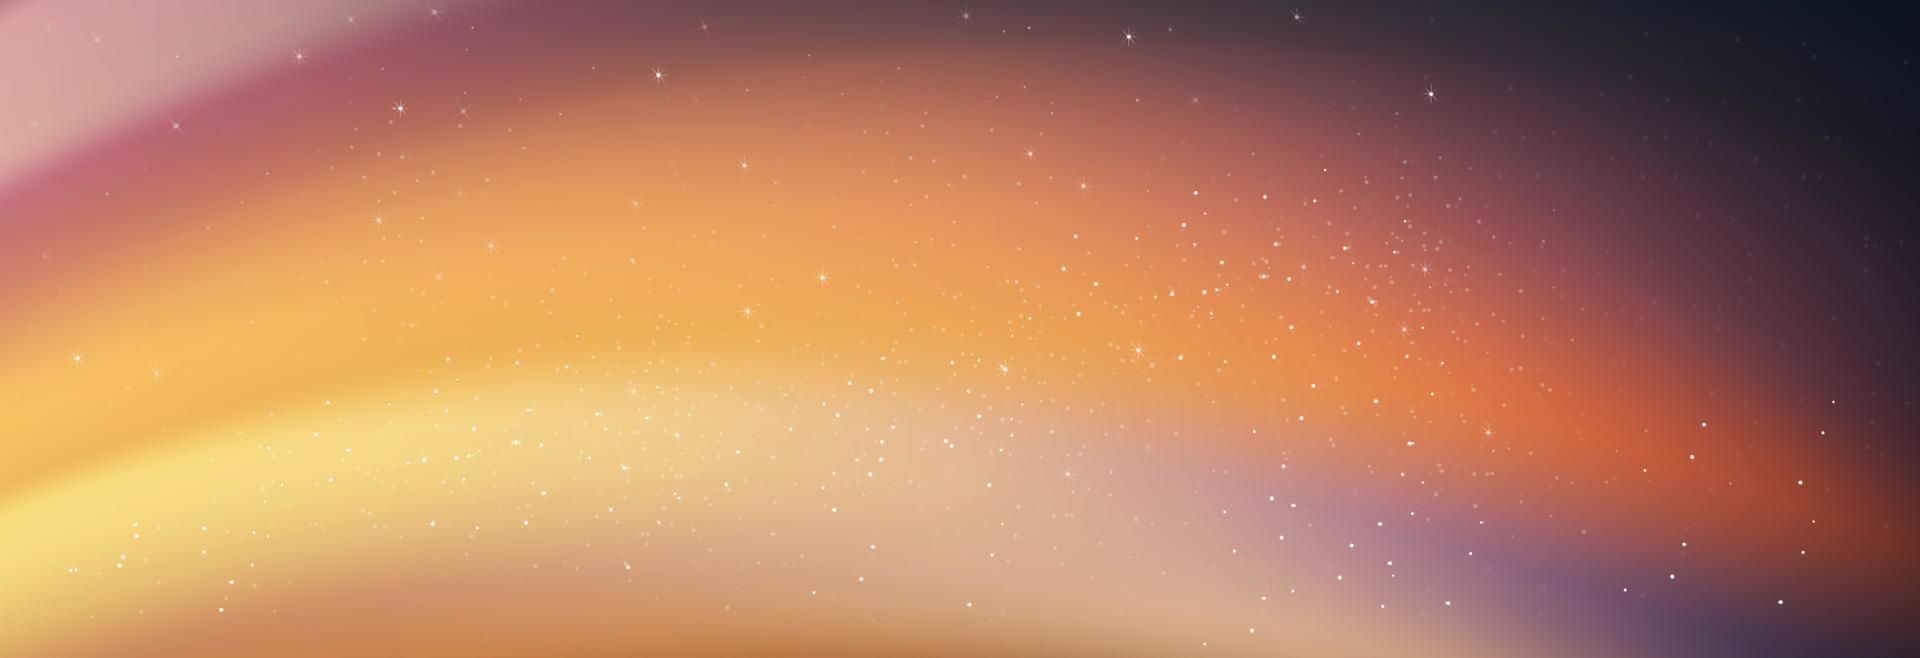 Nachthimmel mit leuchtenden Sternen und fallenden Kometen, Landschaft, dramatische Milchstraße mit Orang, rosa Farbe, Universum mit Weltraumhintergrund der Galaxie. Vektorbanner-Sternenfeld im Dämmerungshimmel für Reisehintergrund vektor